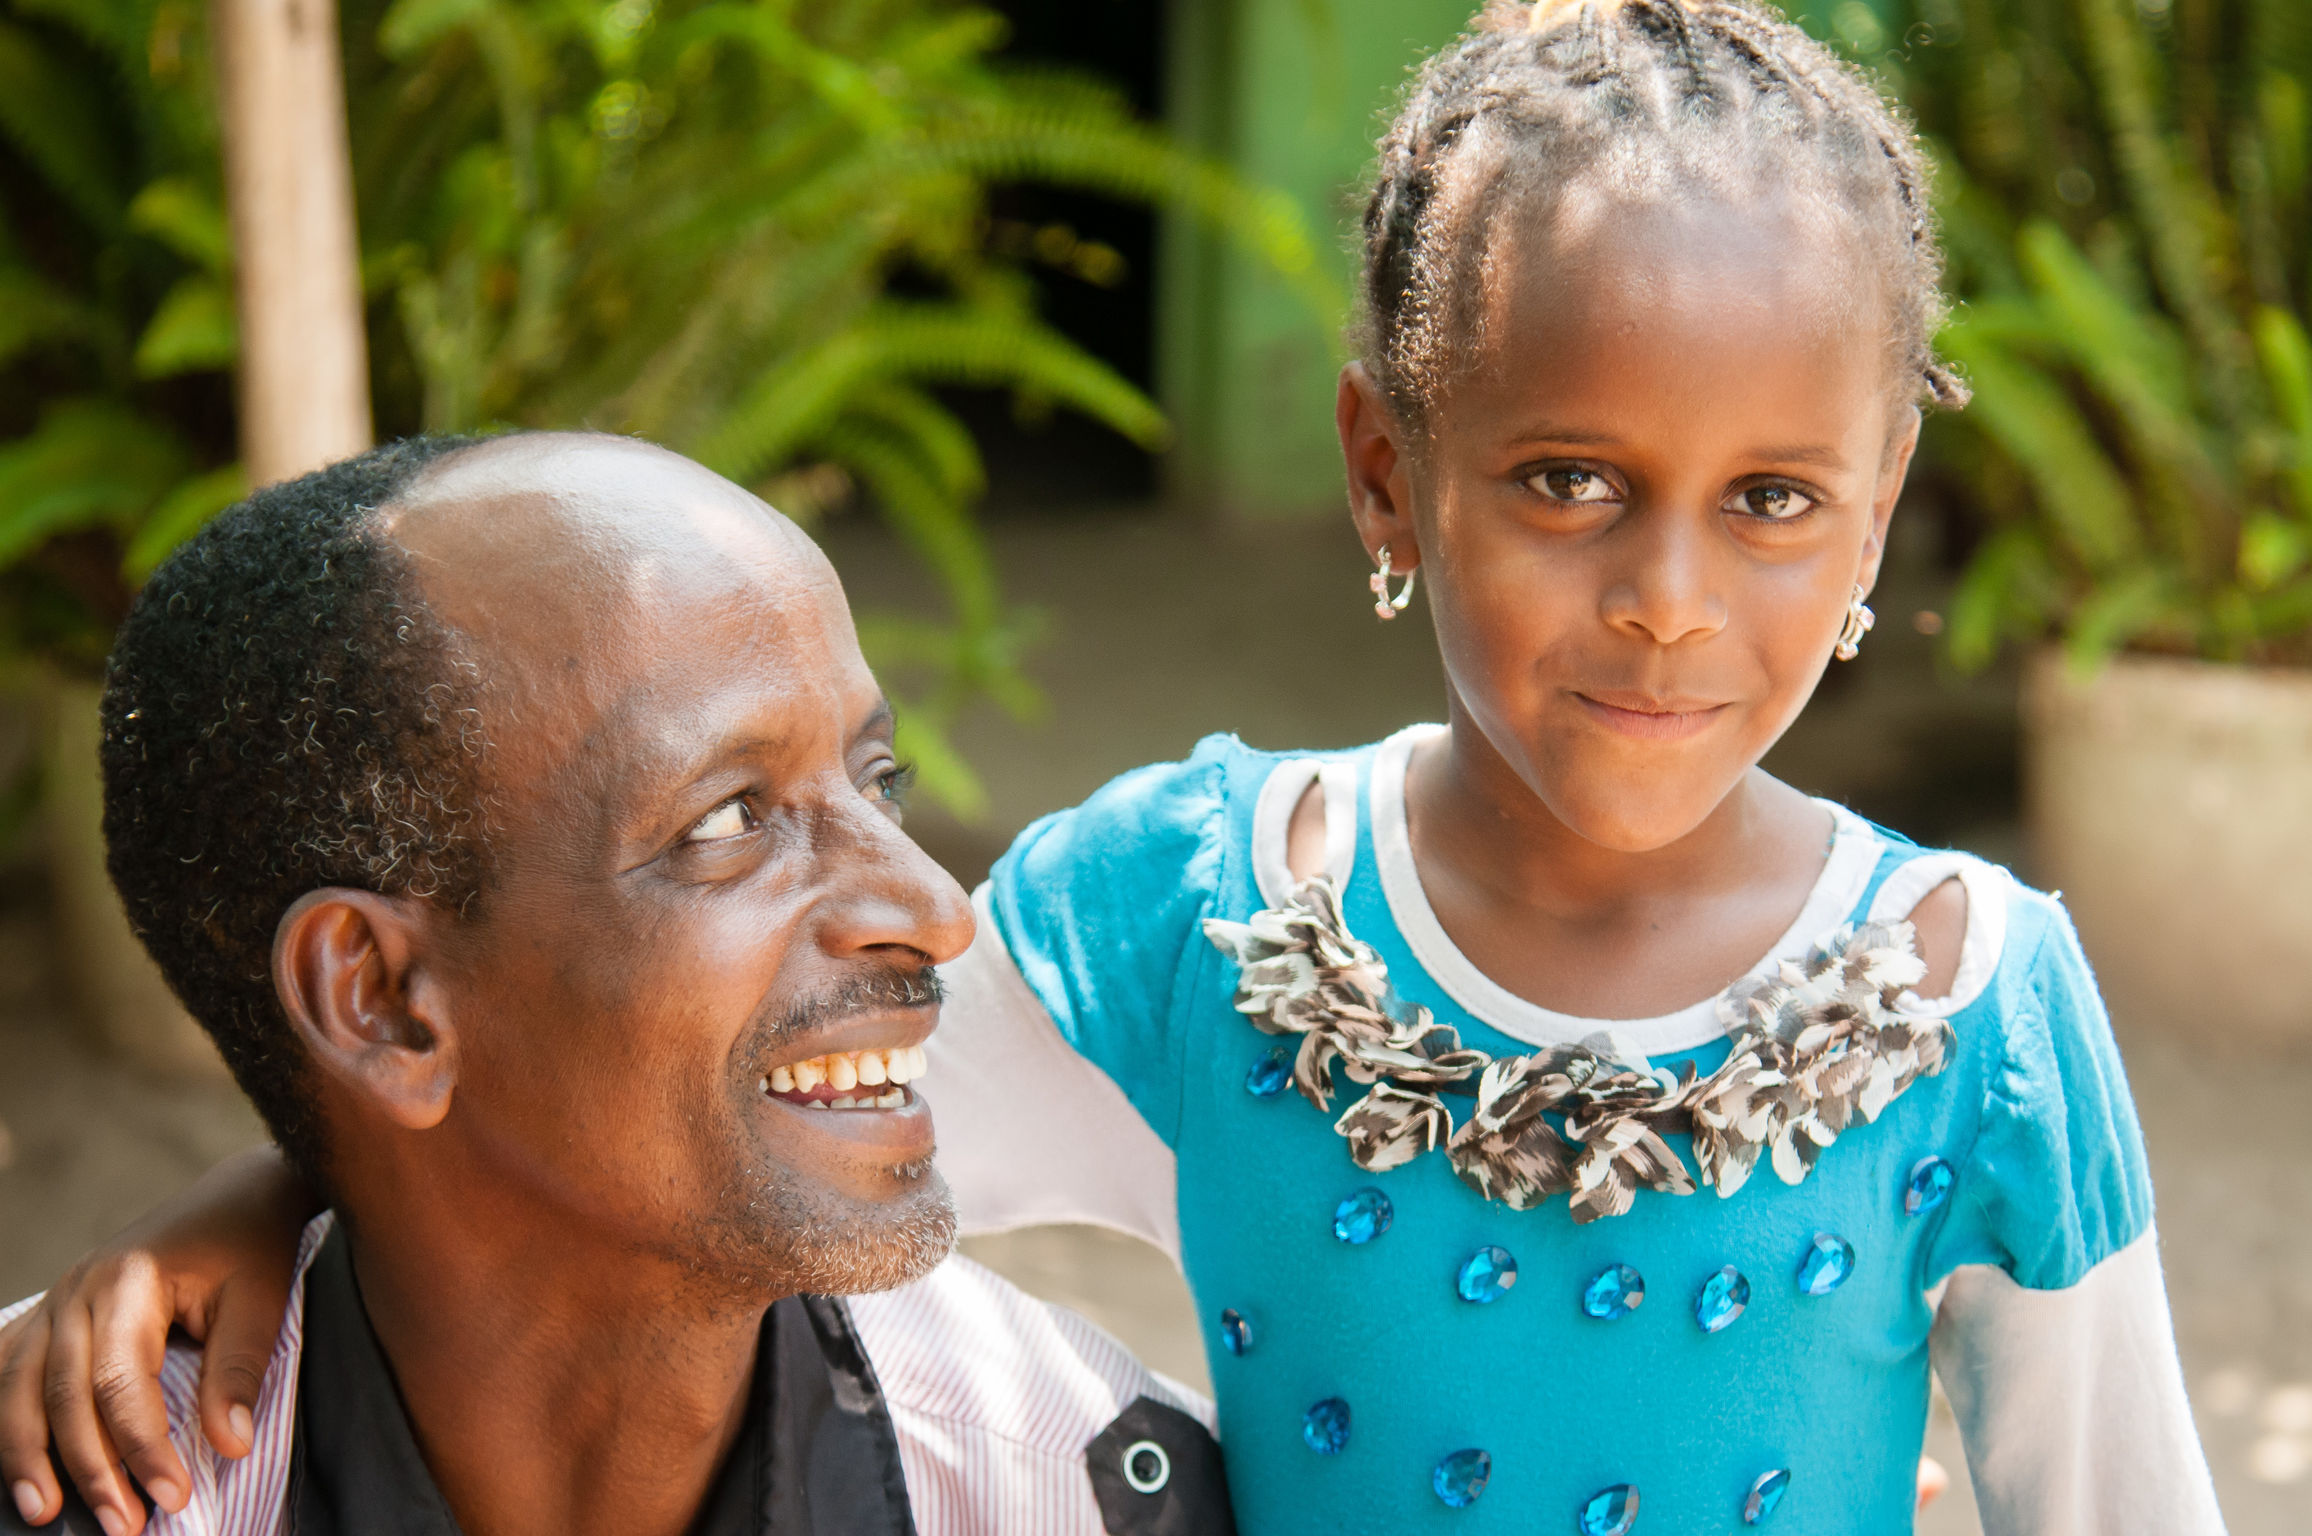 Family Based Care for Ethiopian Children | iF WORLD DESIGN GUIDE